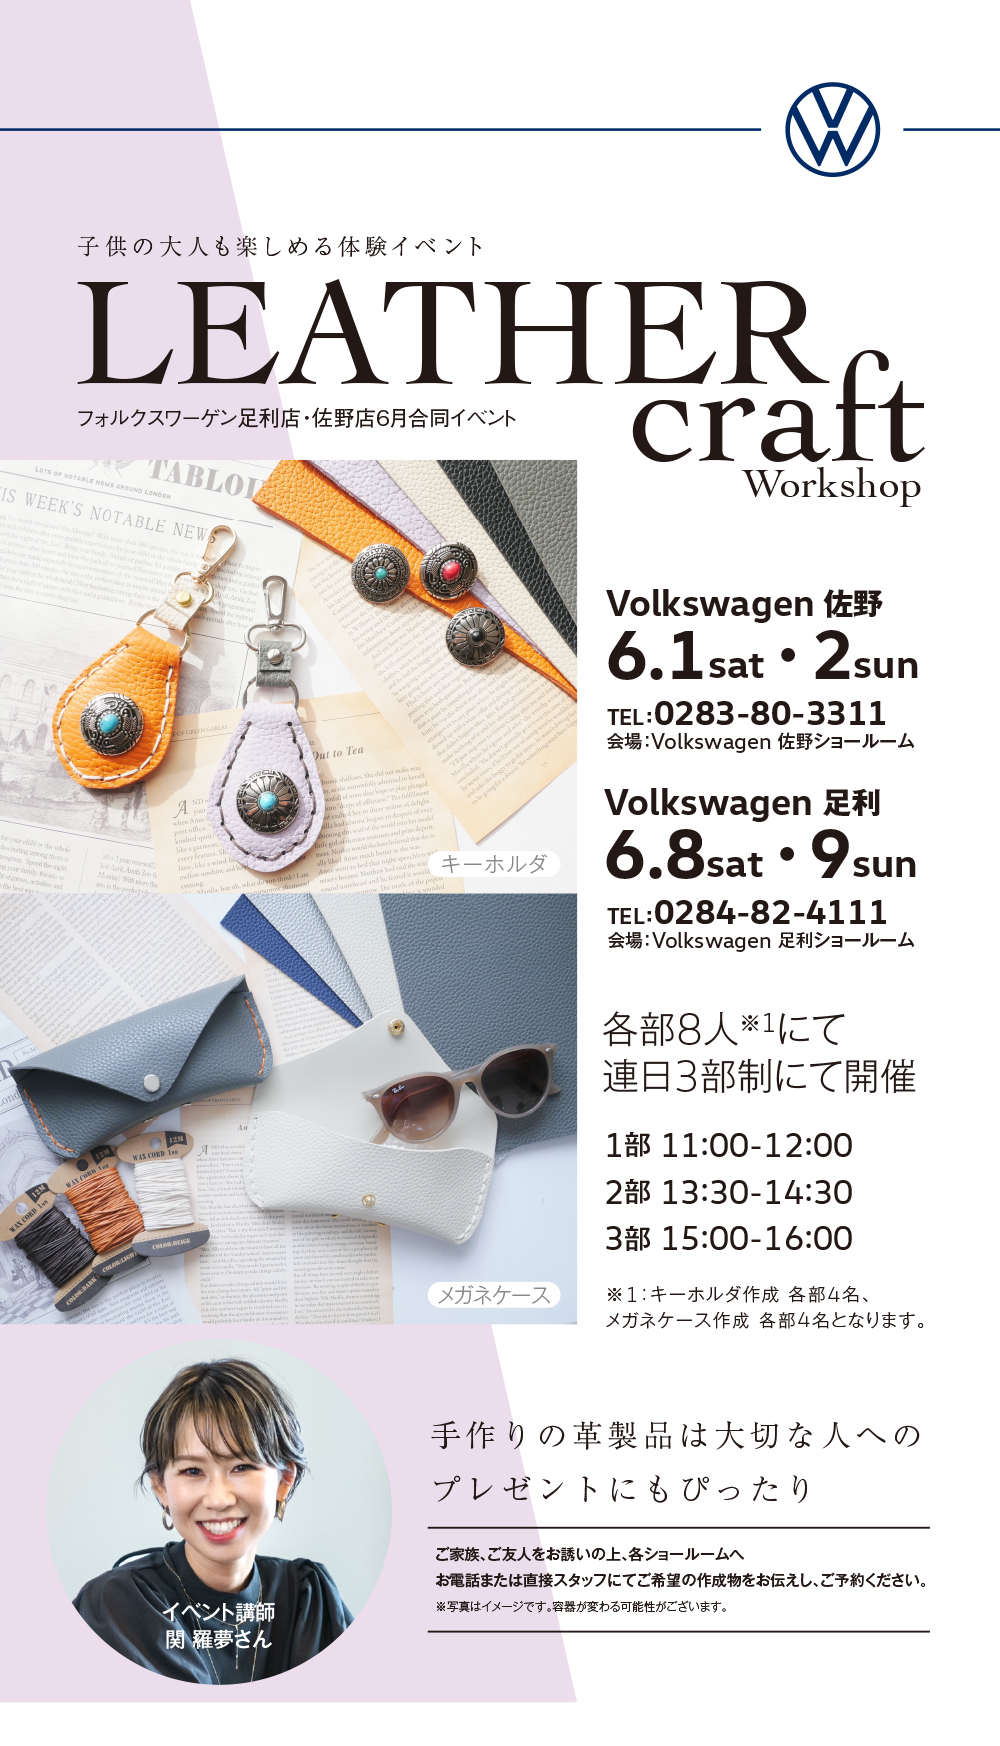 「Volkswagen 足利・佐野 LEATHER craft work shop」